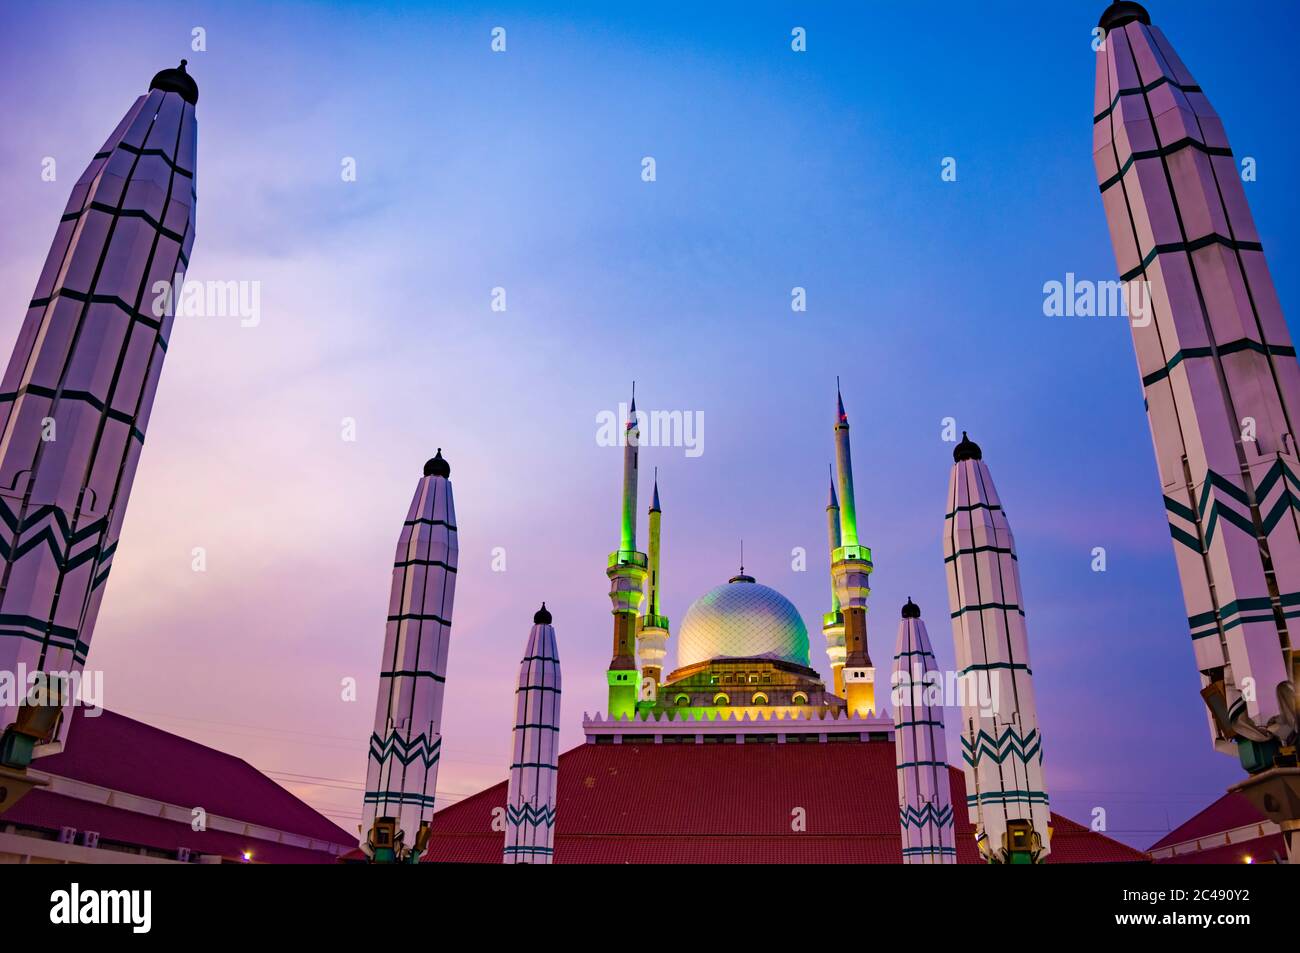 Semarang, Indonesien - CIRCA Nov 2019: Die Fassade der Großen Moschee von Zentral-Java (Masjid Agung Jawa Tengah) bei Sonnenuntergang. Stockfoto